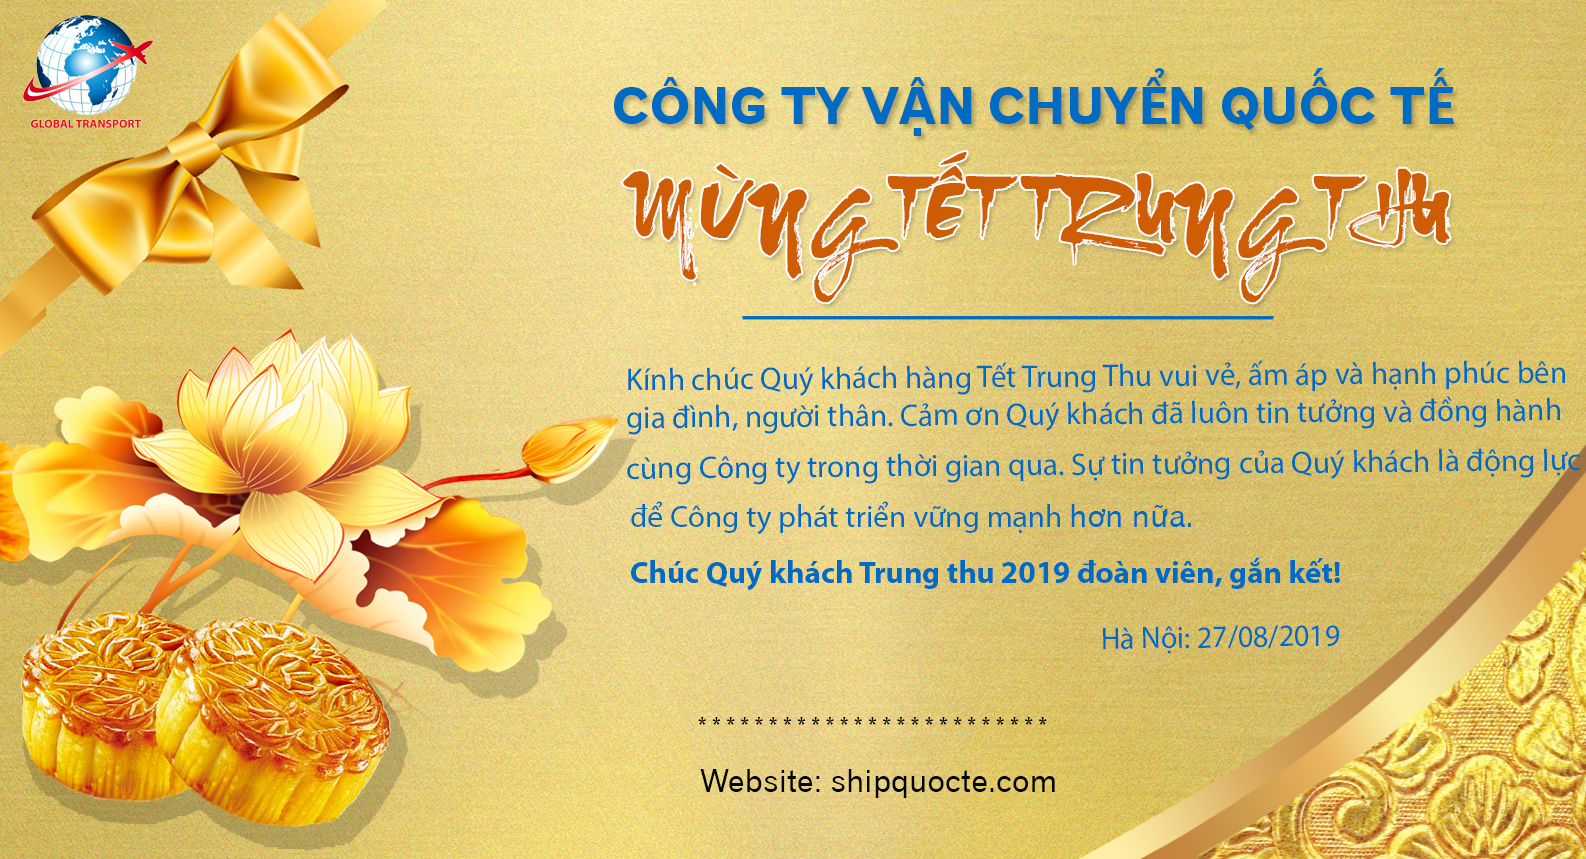 Chúc mừng tết trung thu! Một lễ hội đậm chất truyền thống của người Việt Nam. Năm nay, chúng tôi đã sẵn sàng để chào đón một mùa trung thu vui tươi và đầy niềm vui. Hãy tham gia vào những hoạt động của chúng tôi để đánh dấu cho mùa lễ hội này thật đặc biệt và ý nghĩa.